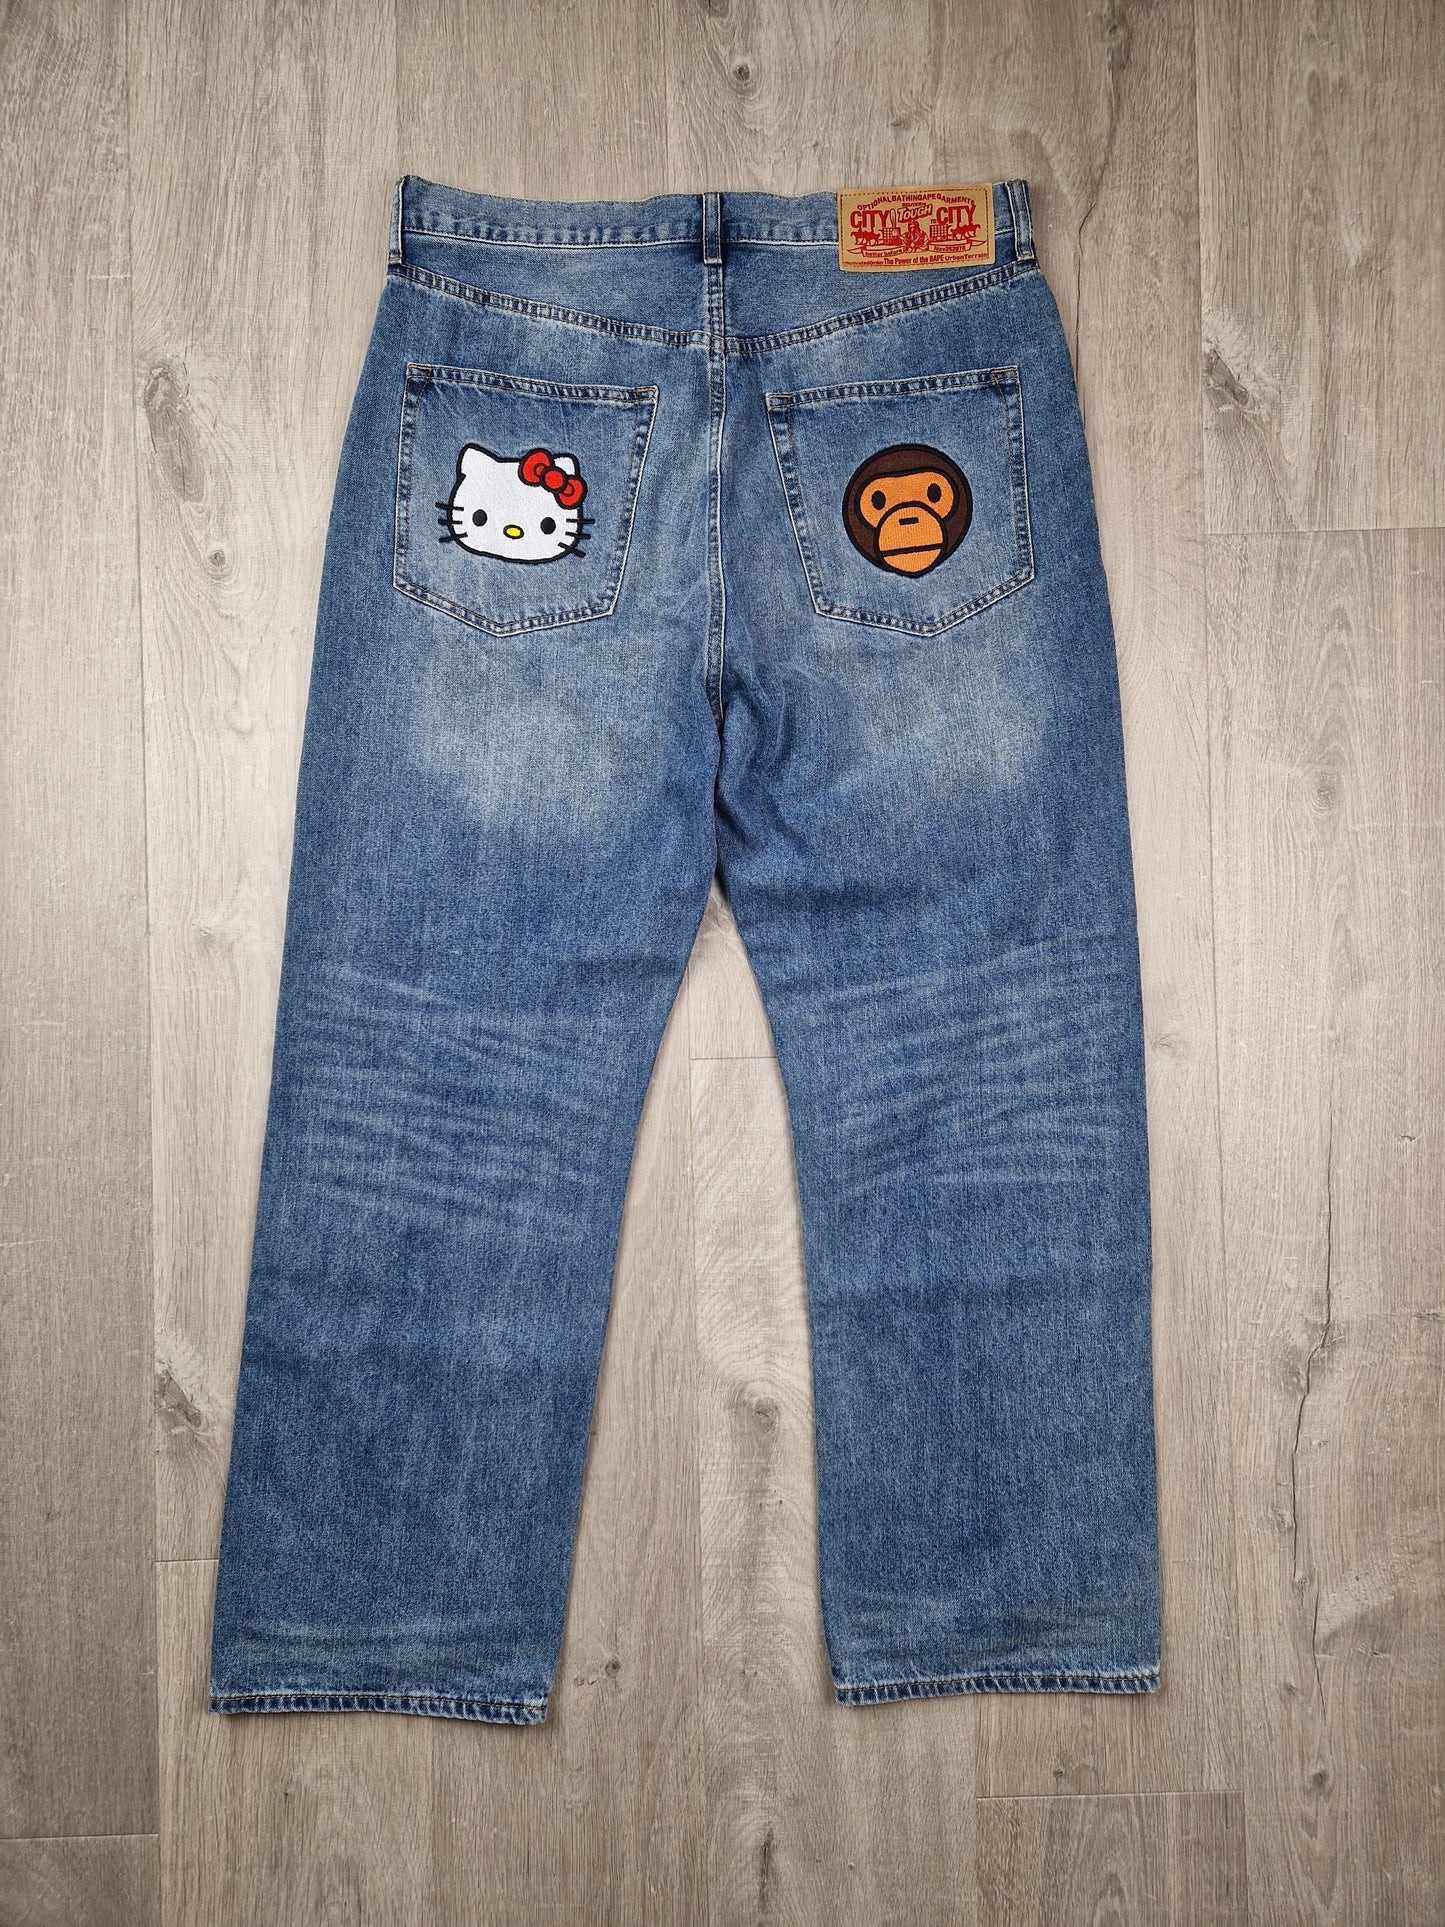 SuperRARE Bape x Sanrio Hello Kitty x Baby milo jeans (34×34)